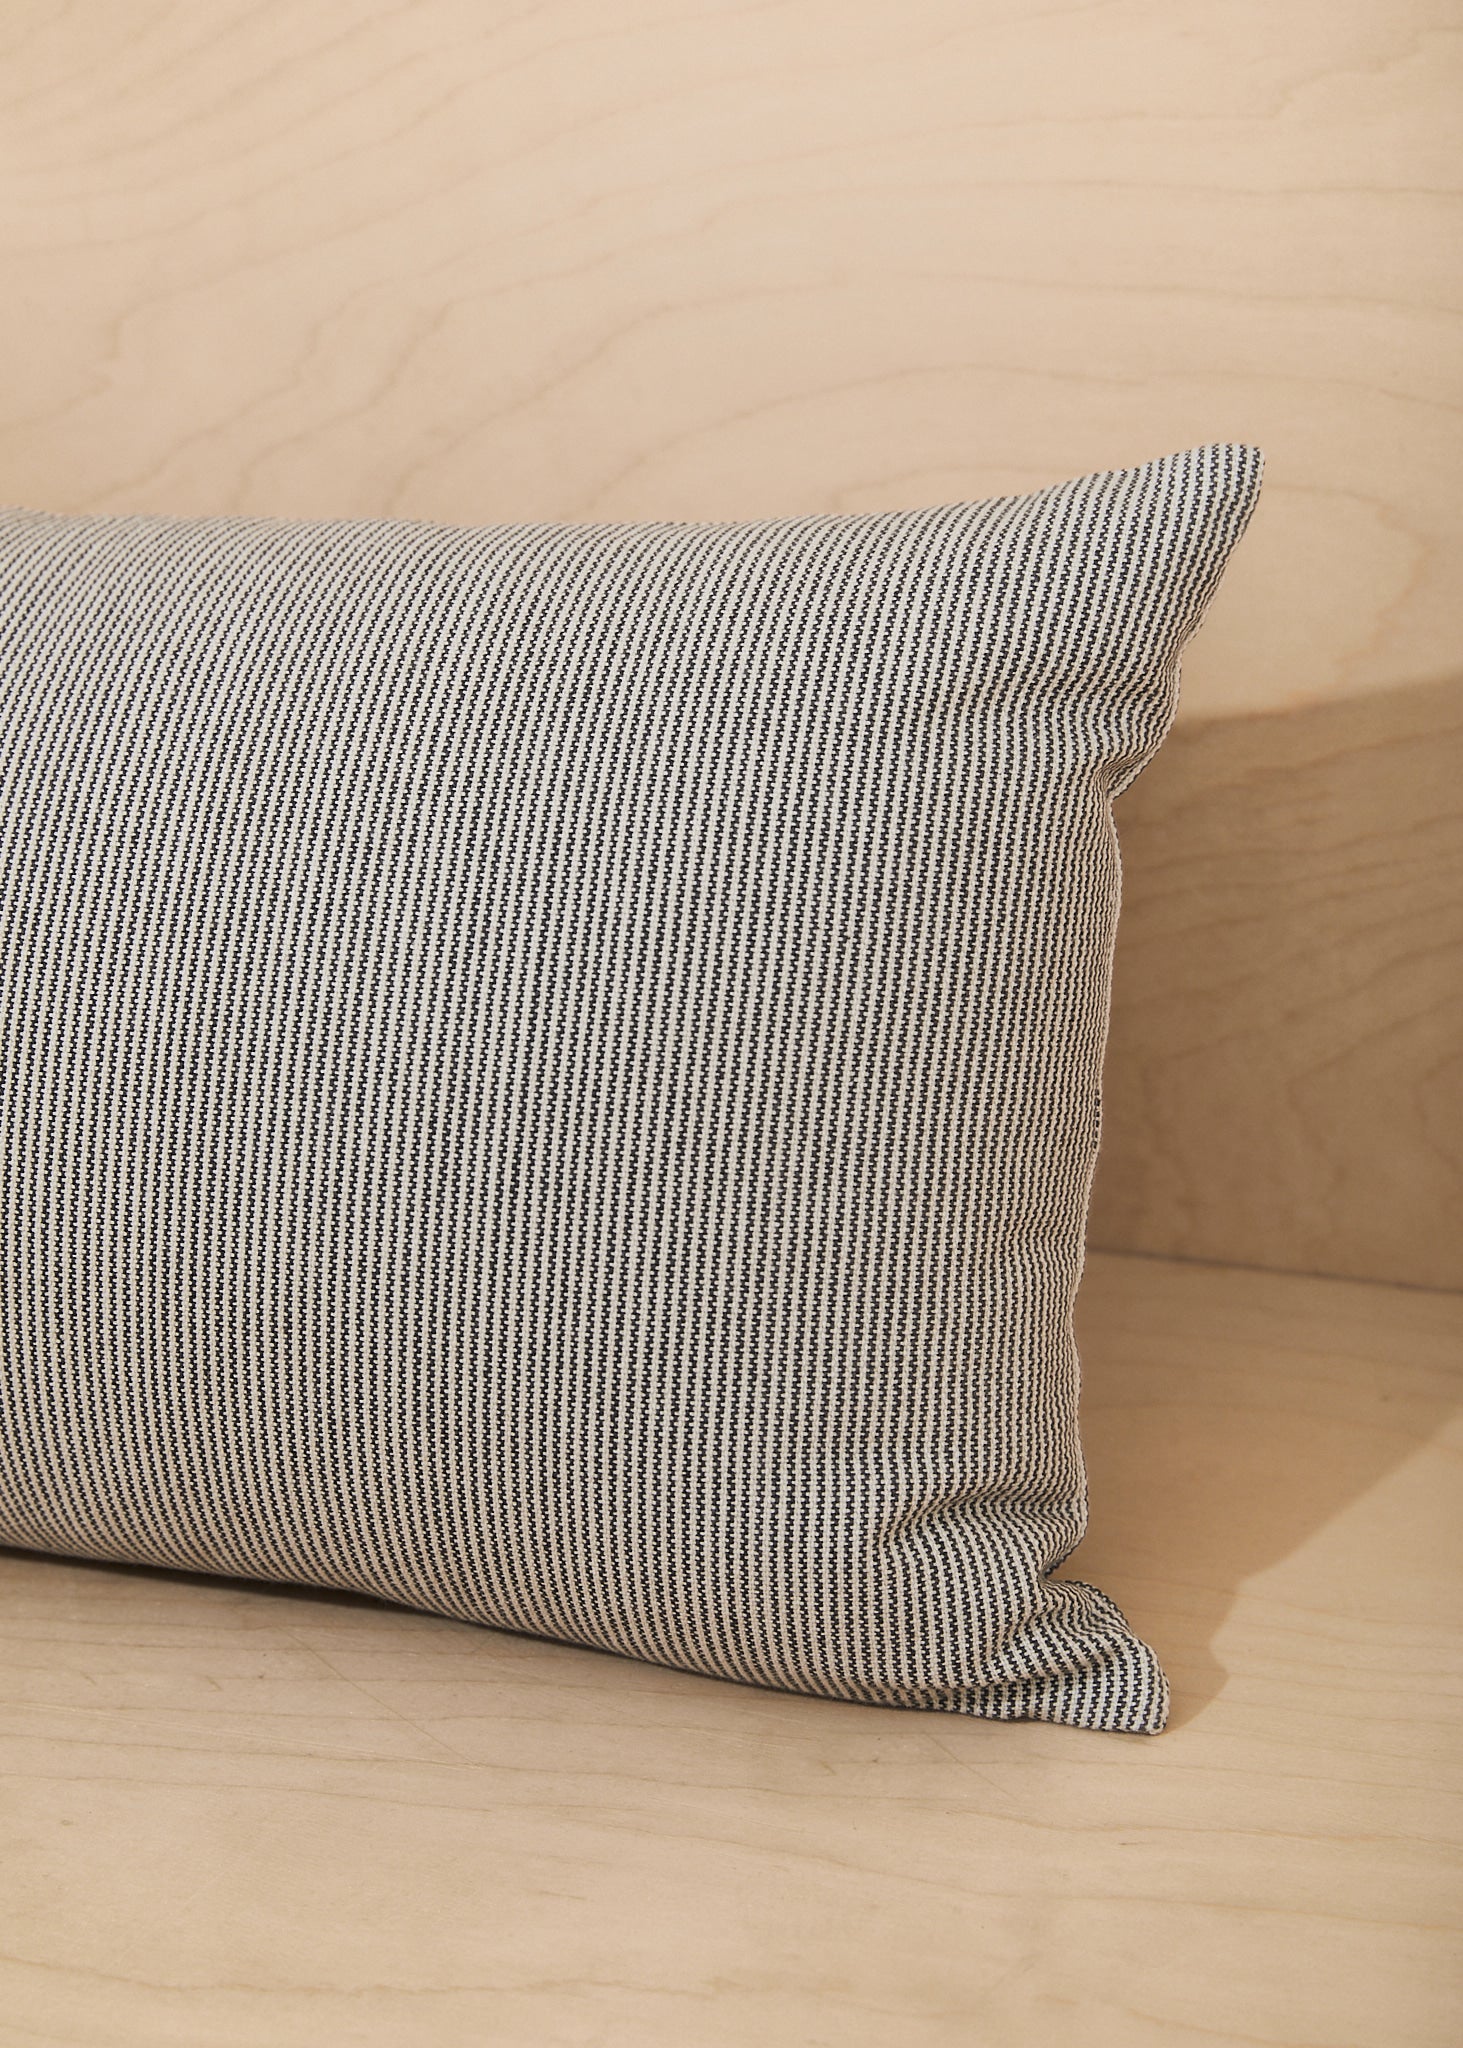 Pinstripe Lumbar Pillow Cover | Iron